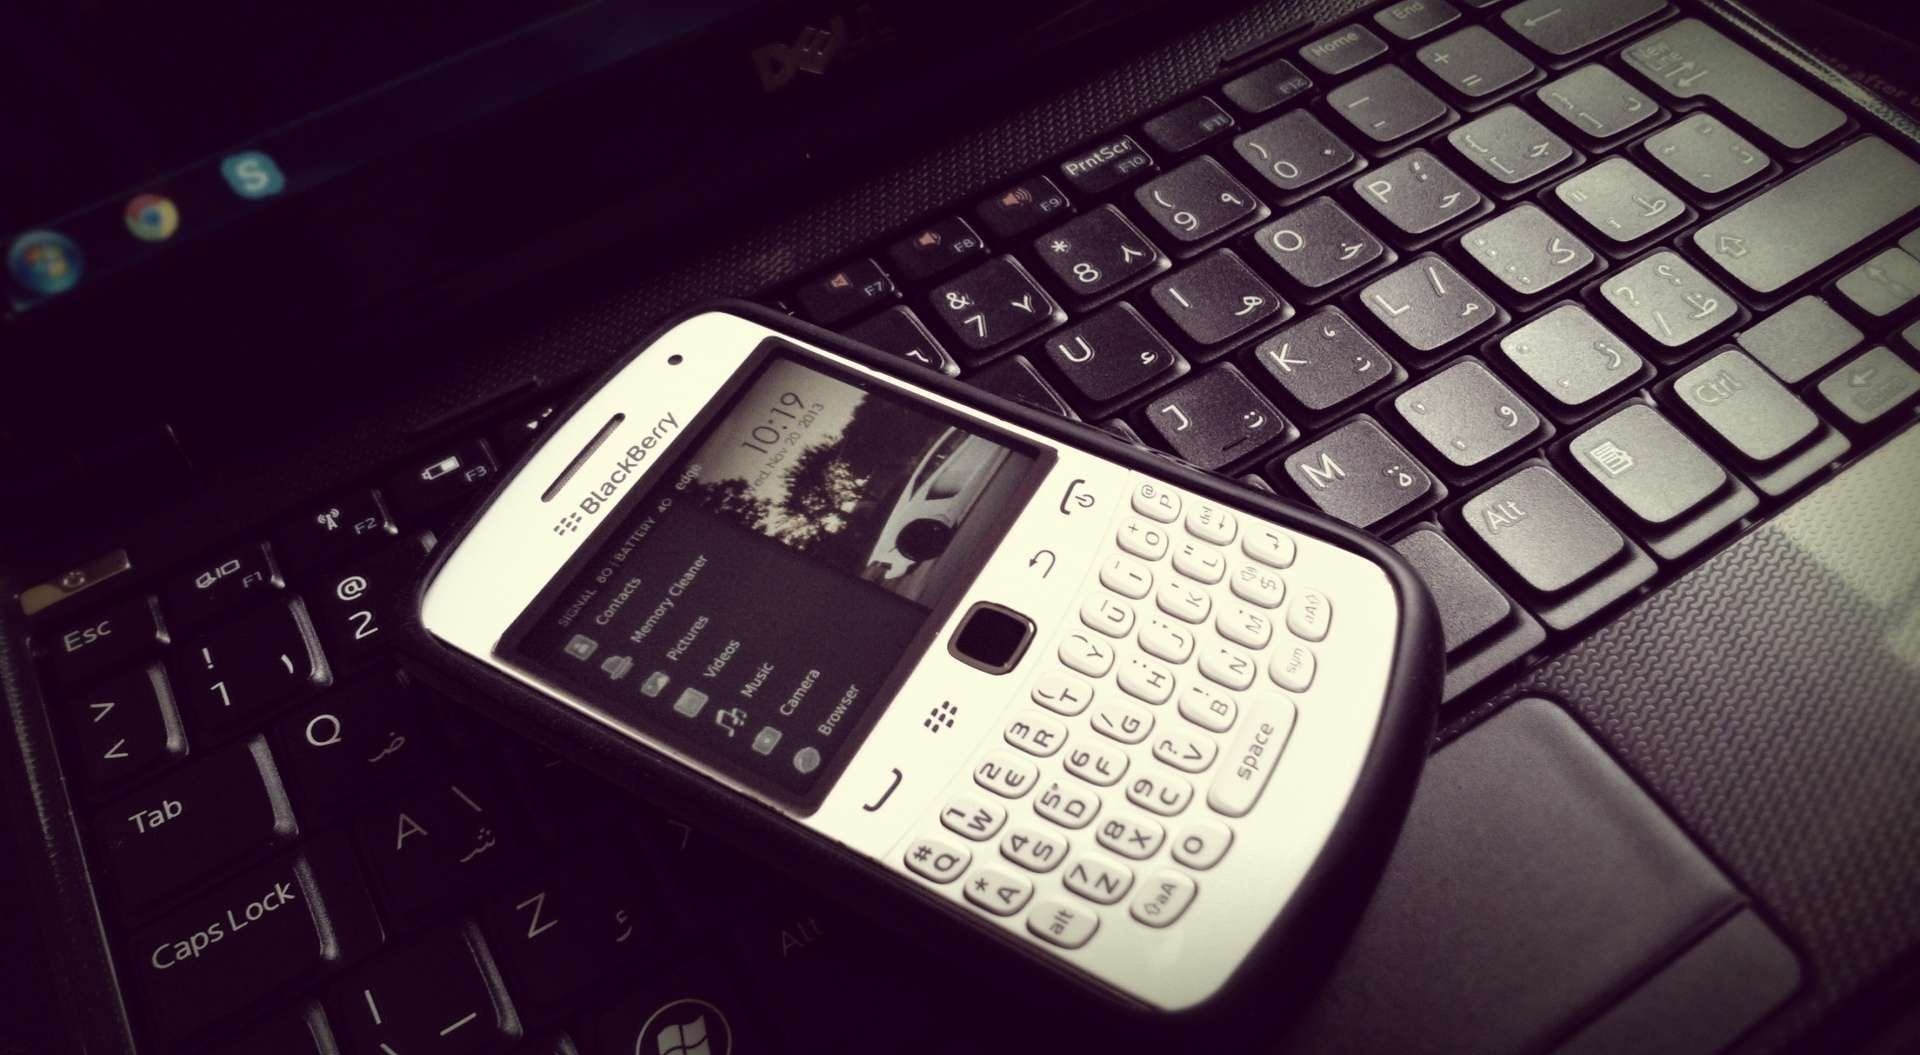 Blackberry Mobiles Pictures Desktop Wallpaper Image